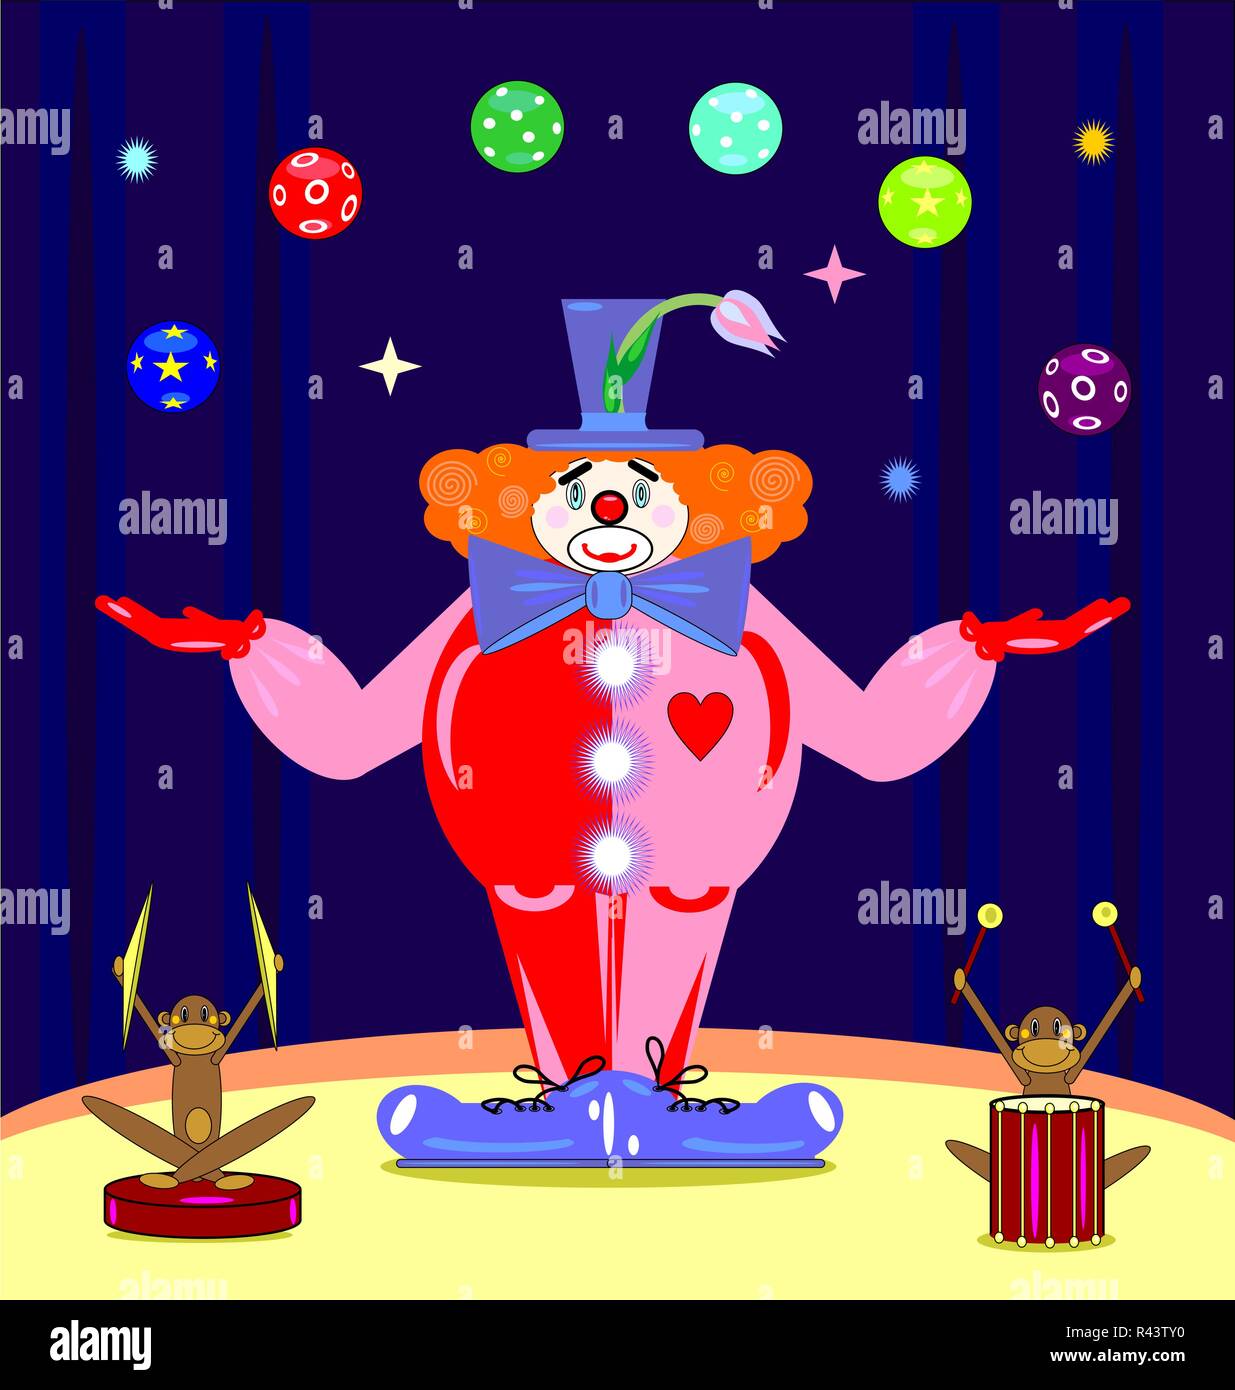 Scène violet foncé, singes et résumé rouge clown qui jongle avec des balles Illustration de Vecteur